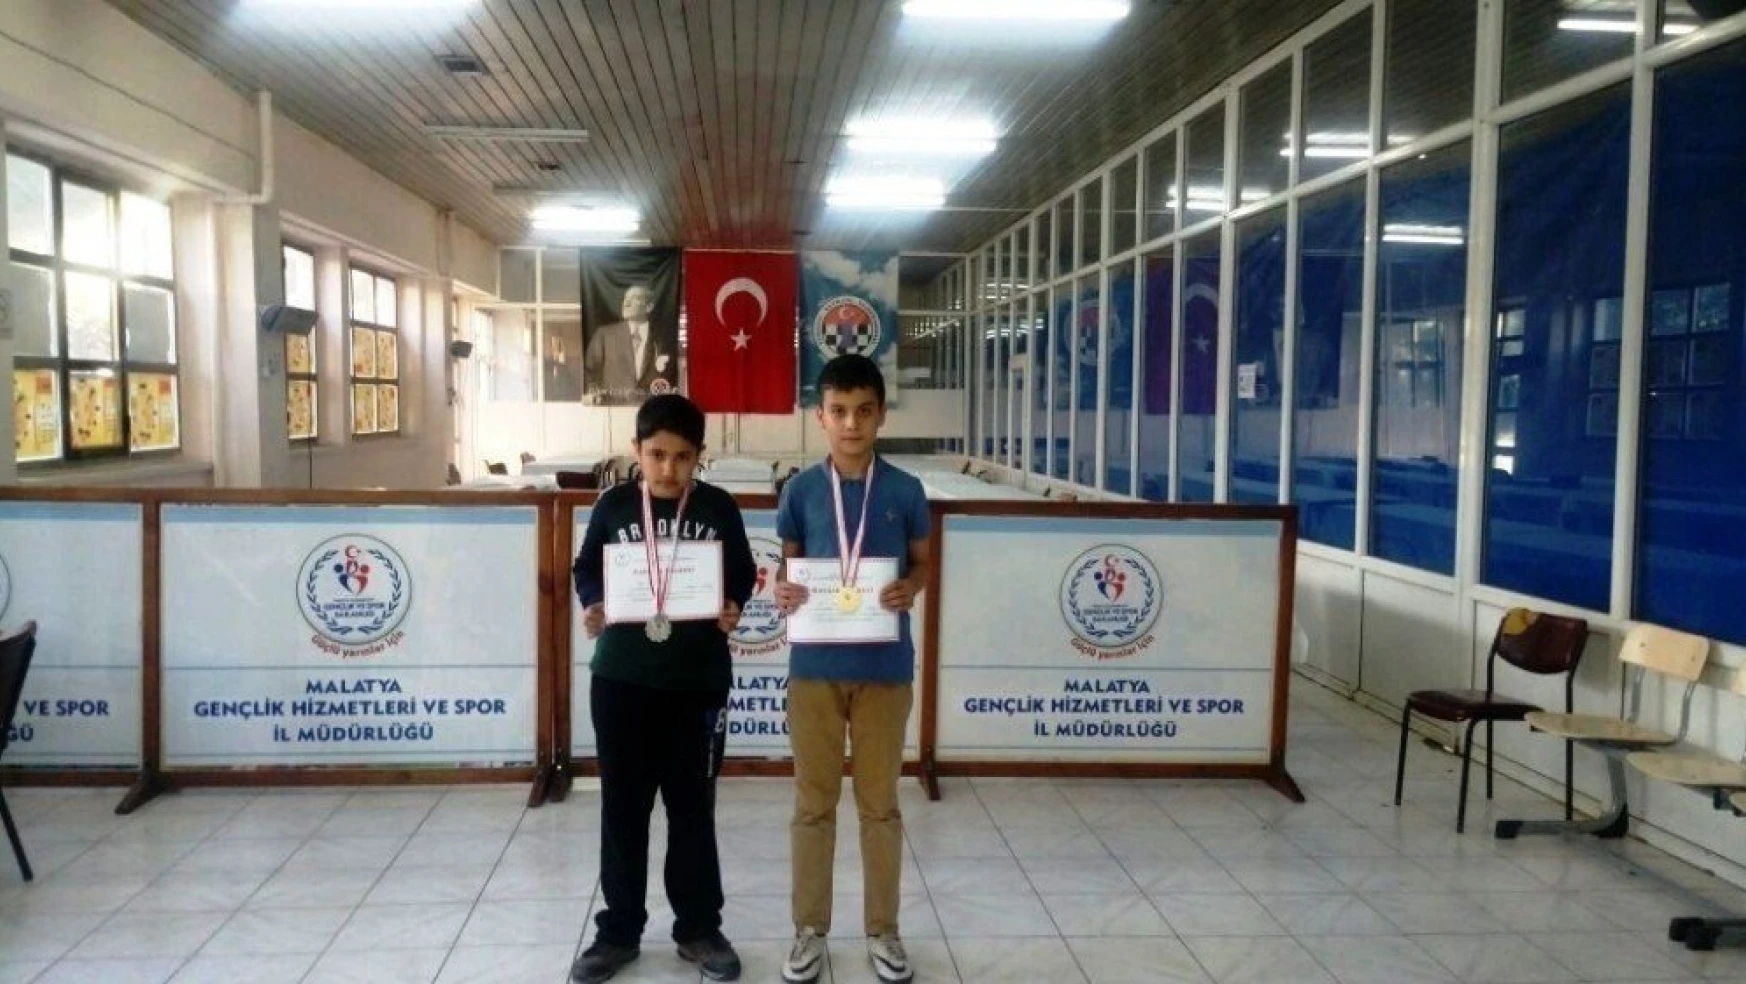 Çamlıca Okulları öğrencisi 2 turnuvada da birinci oldu
